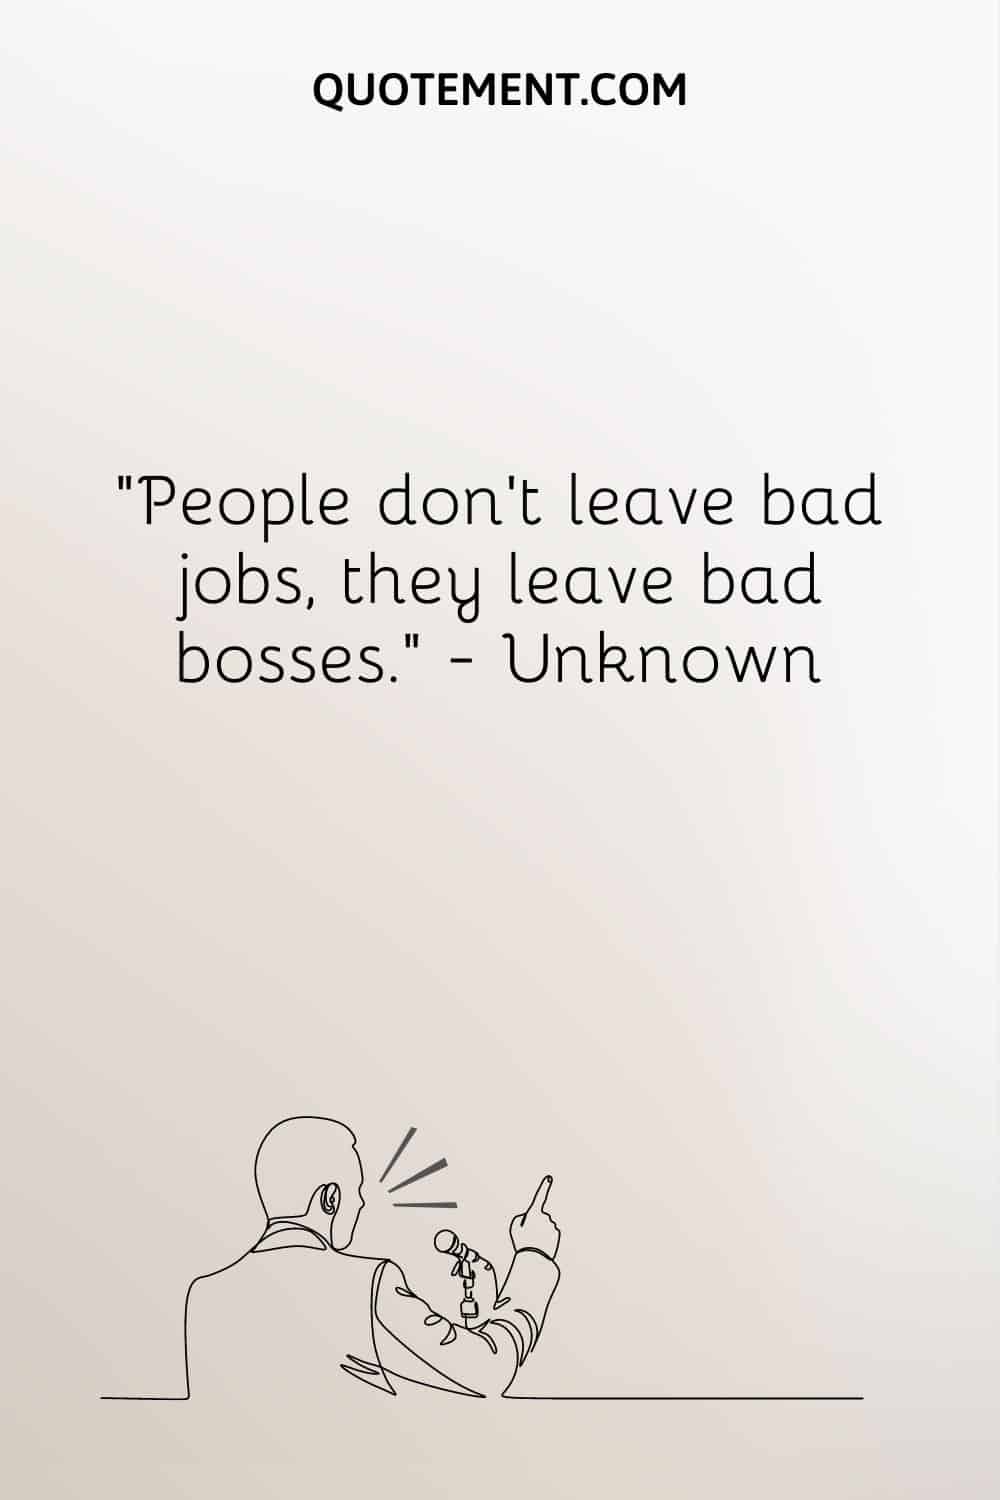 La gente no deja los malos trabajos, sino los malos jefes.